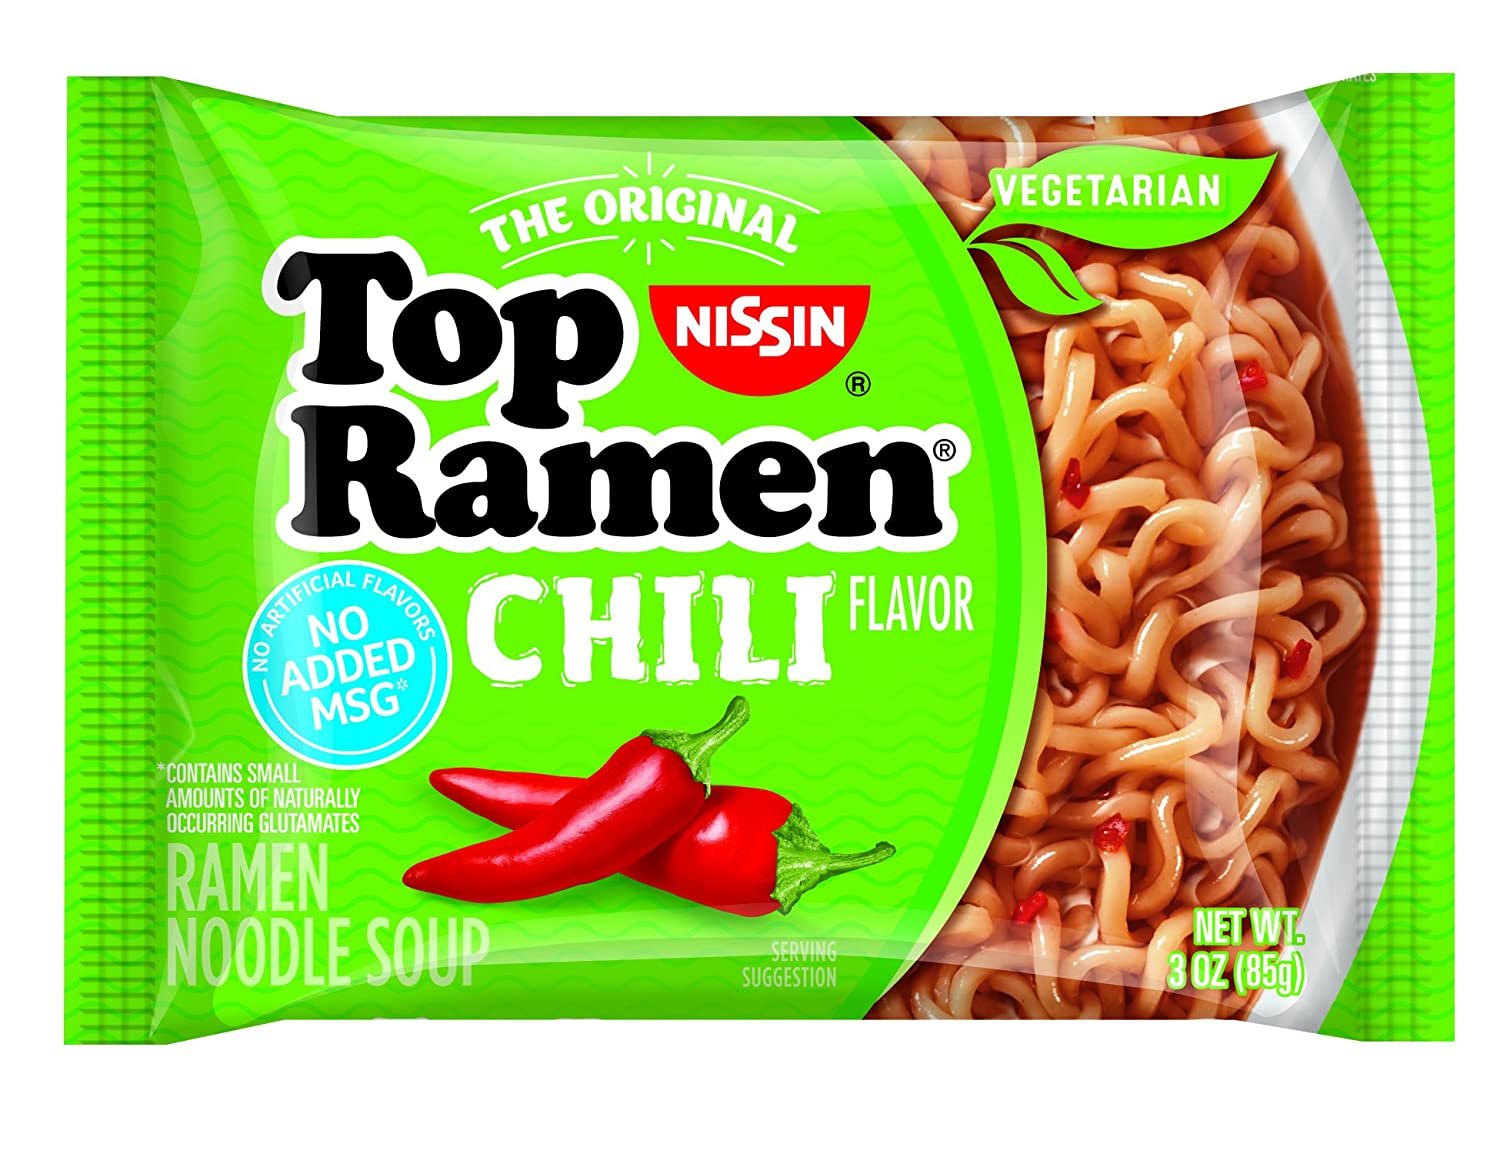 Nissin Top Ramen Noodle Soup Chili Flavor 8 Pack